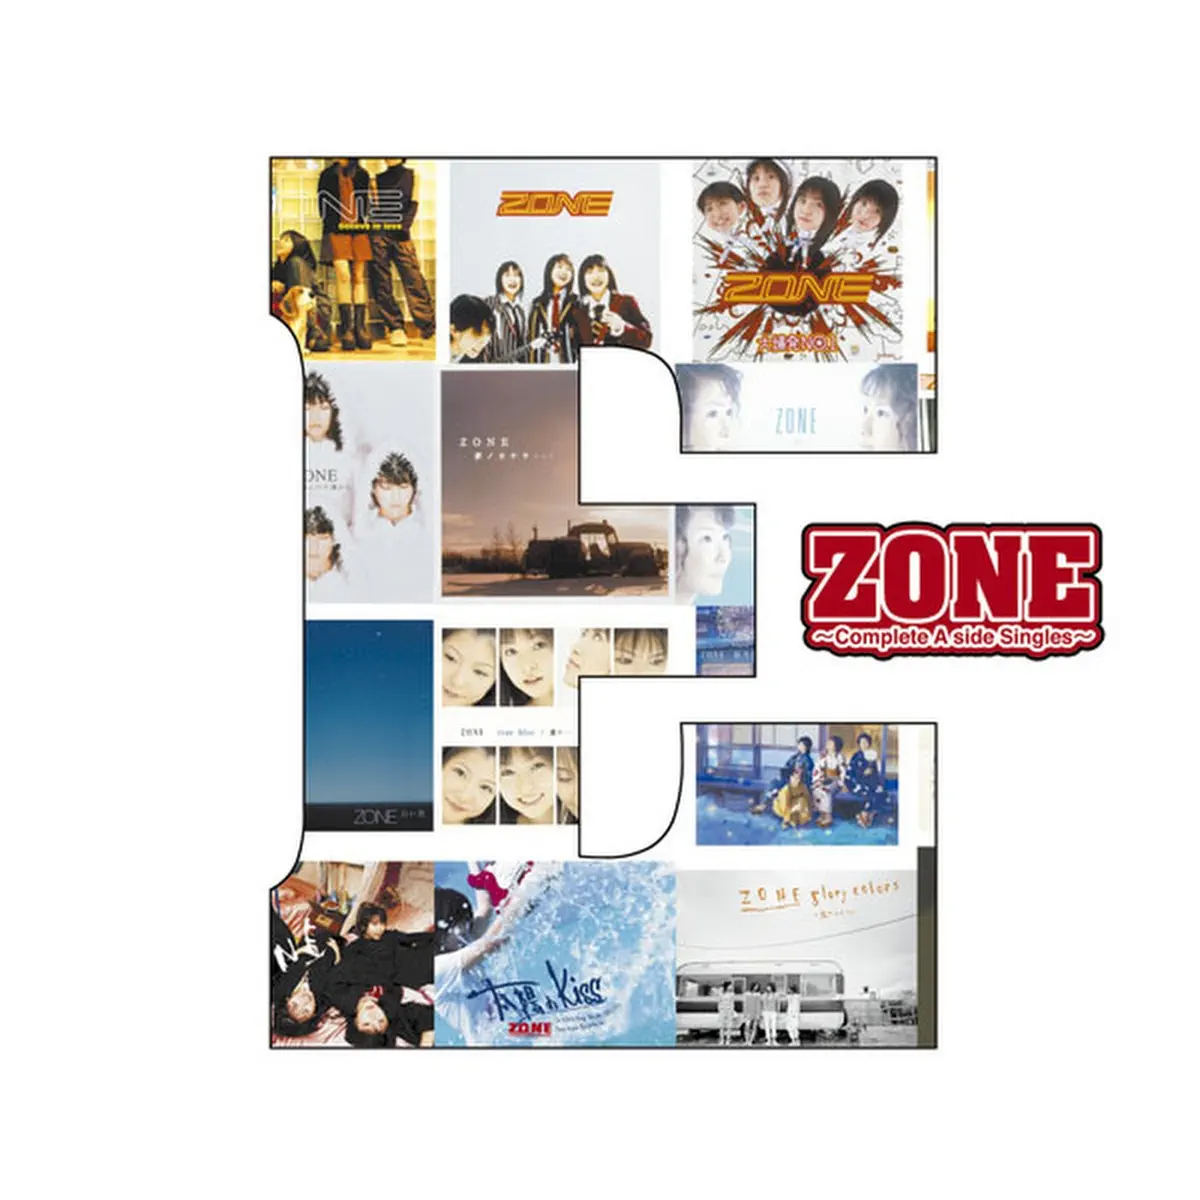 少女地帶 Zone - E 〜Complete A side Singles〜 (2012) [iTunes Plus AAC M4A]-新房子